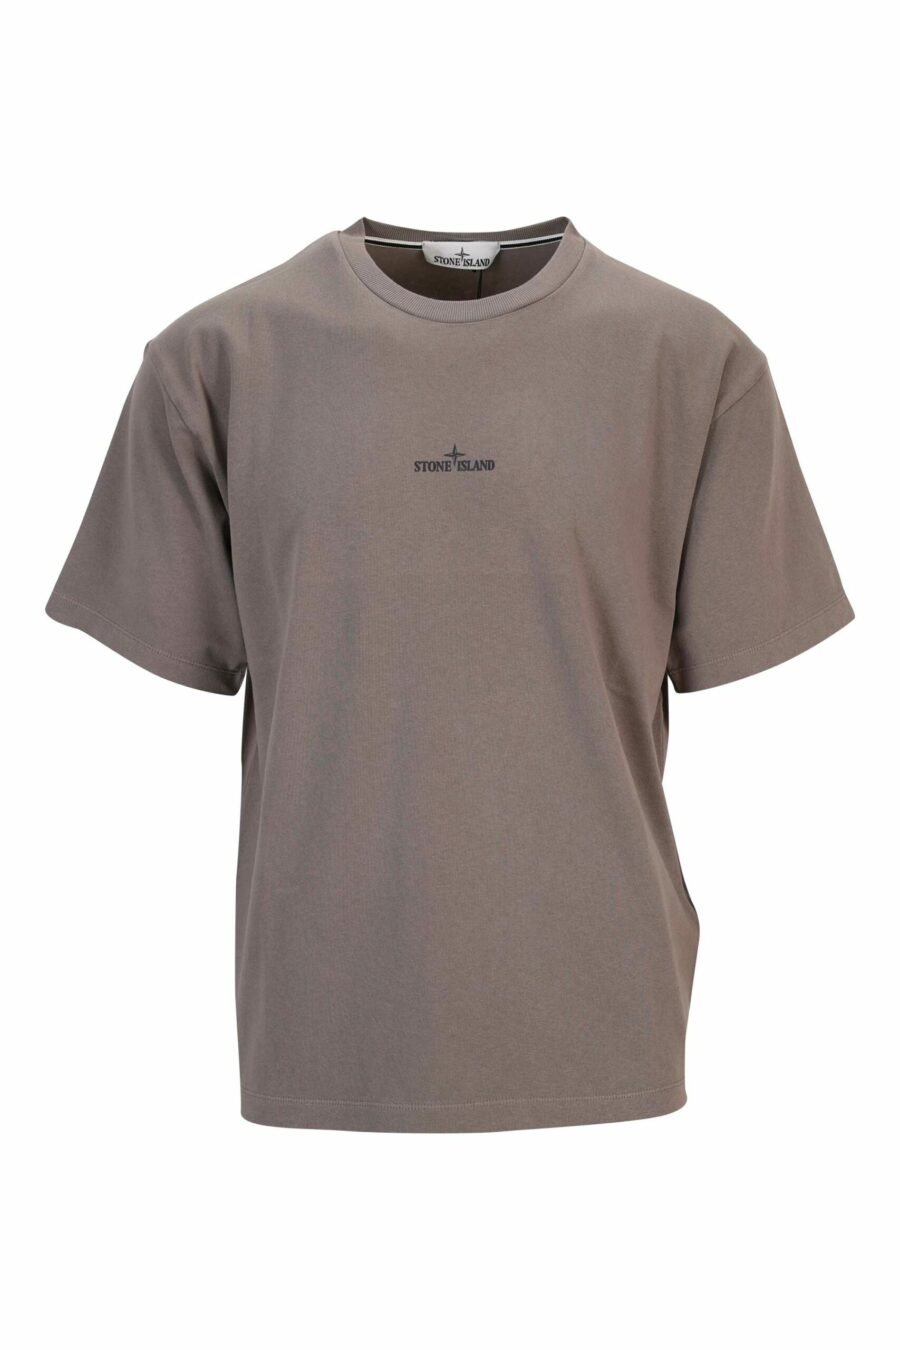 T-shirt gris avec un petit logo noir - 8052572912771